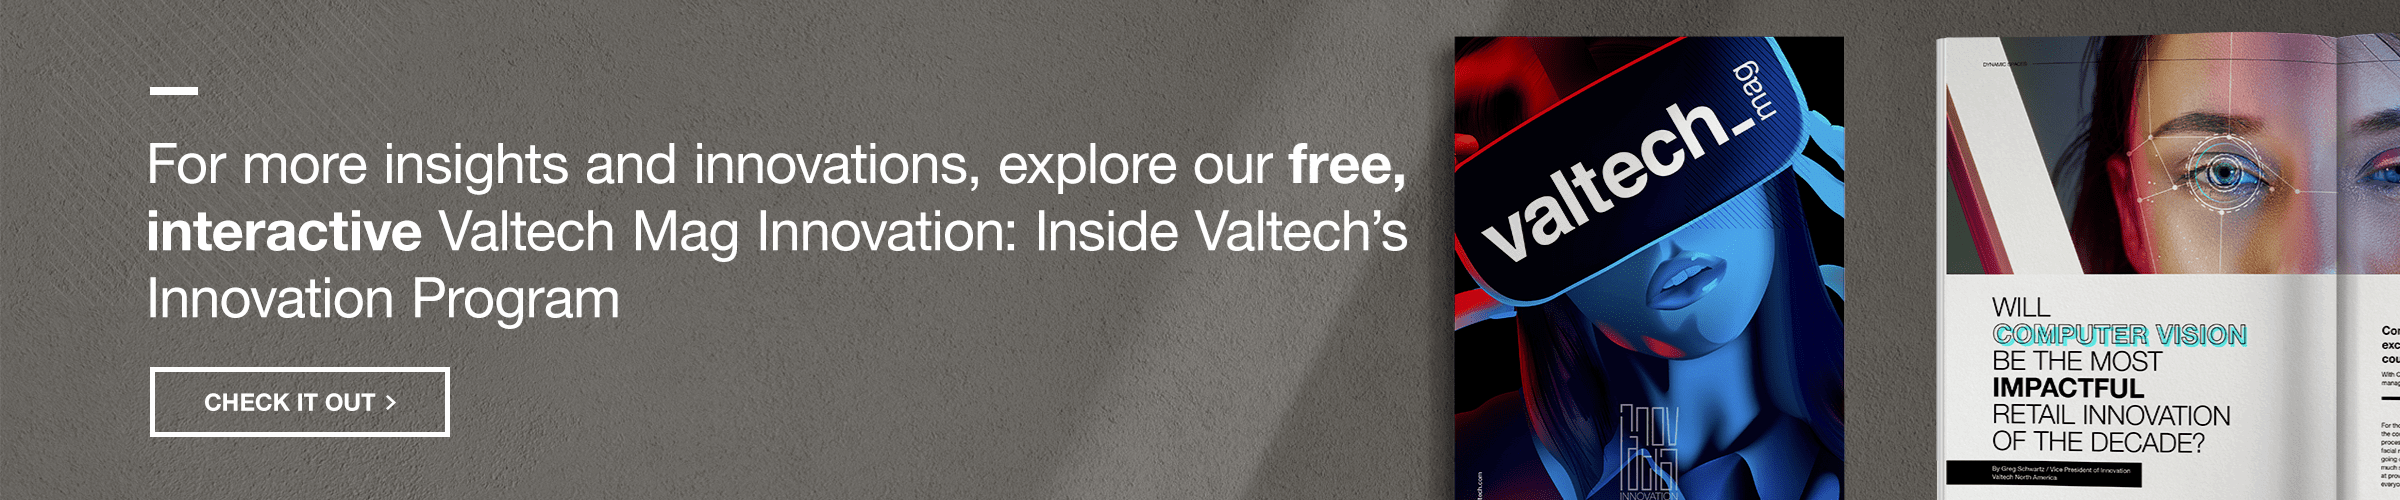 Valtech Mag Innovation Program Banner